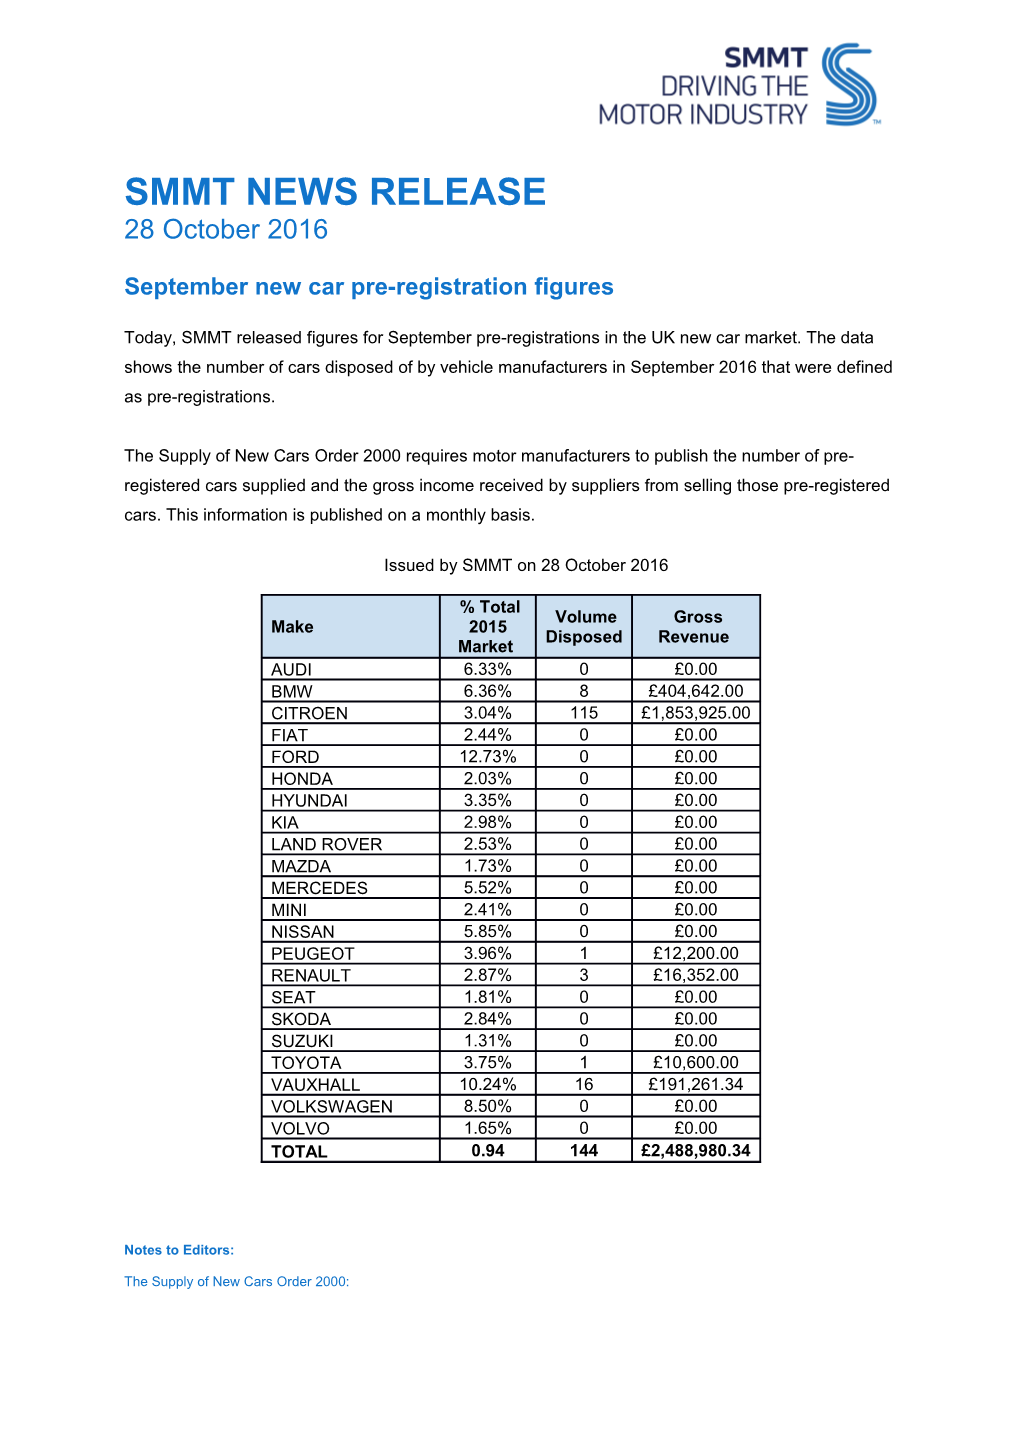 September New Car Pre-Registration Figures